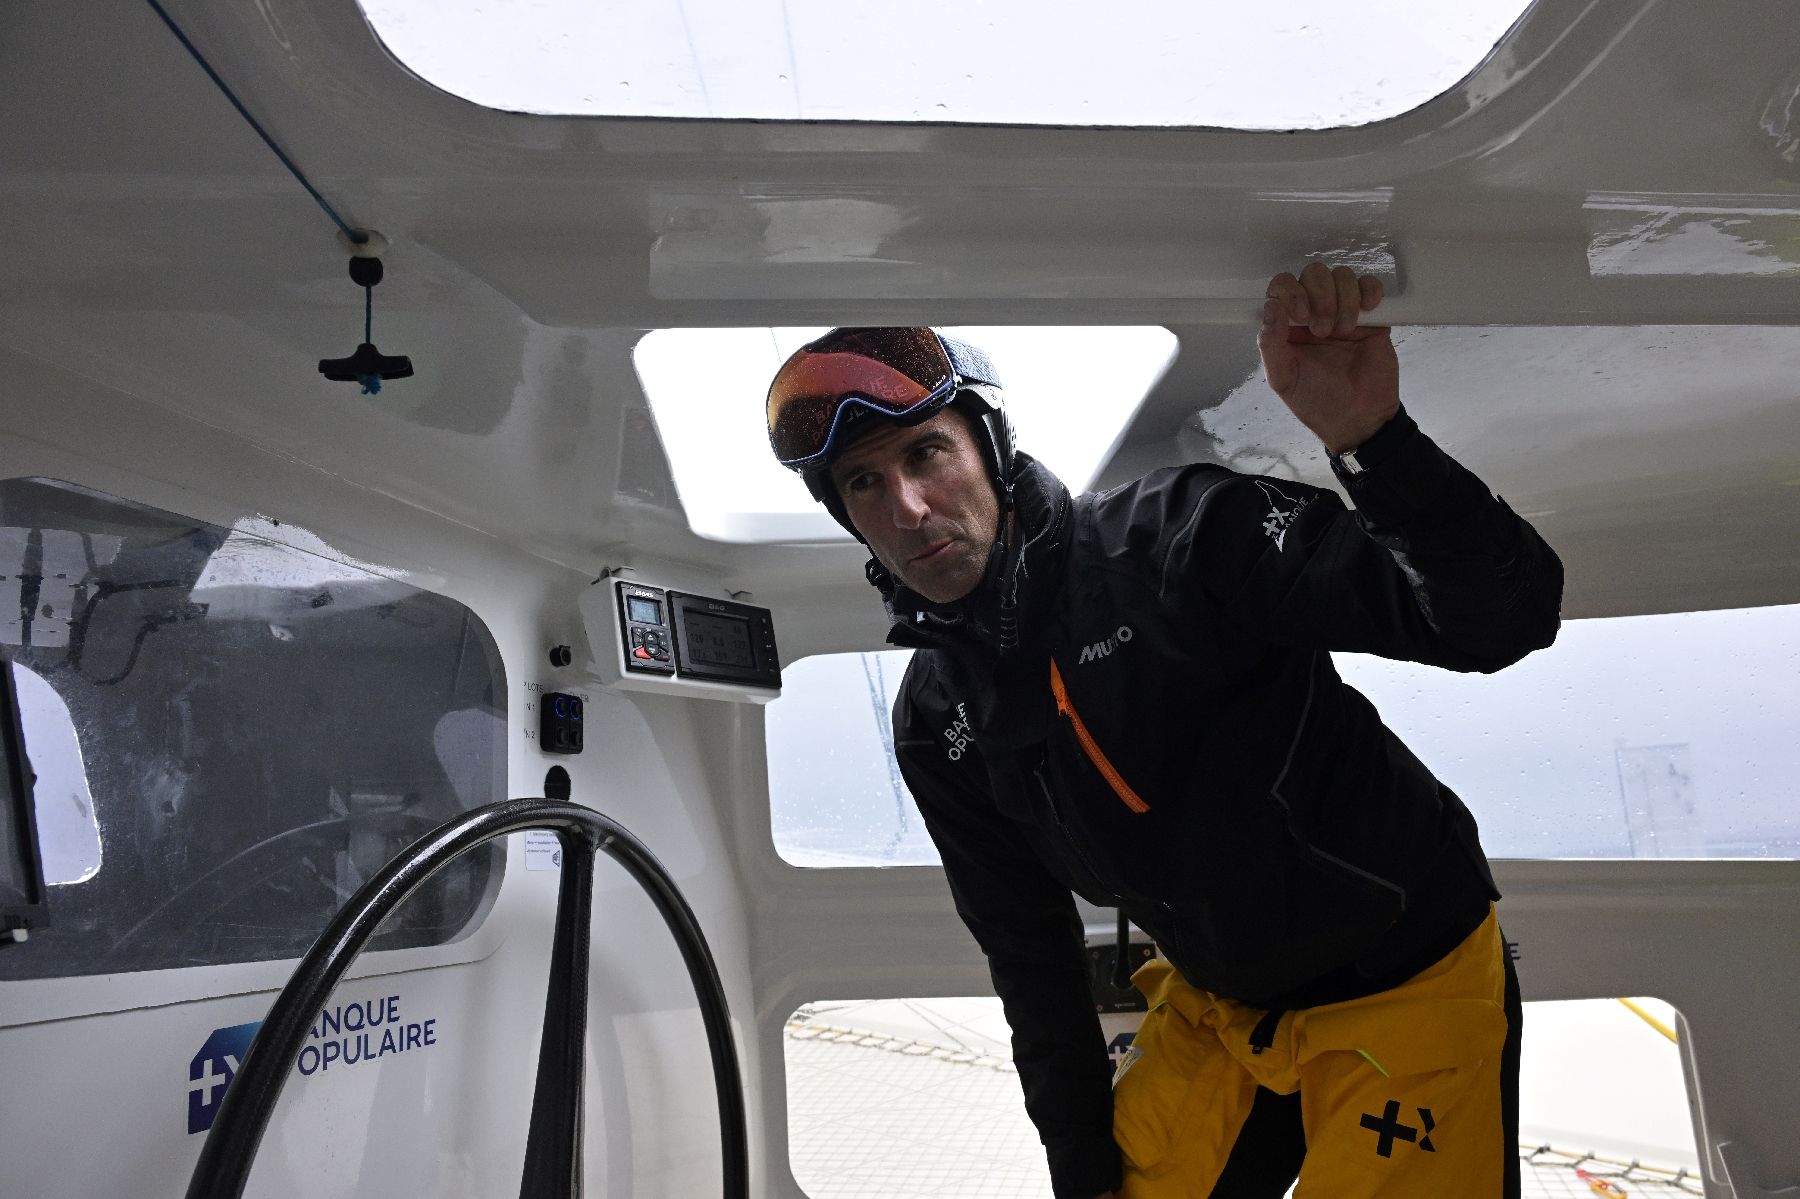 Le skipper Armel Le Cléac'h lors d'une séance préparatoire au passage de la flamme olympique à travers l'océan Atlantique à bord du multicoque Banque Populaire Ultim au large de Lorient, le 29 mai 2024